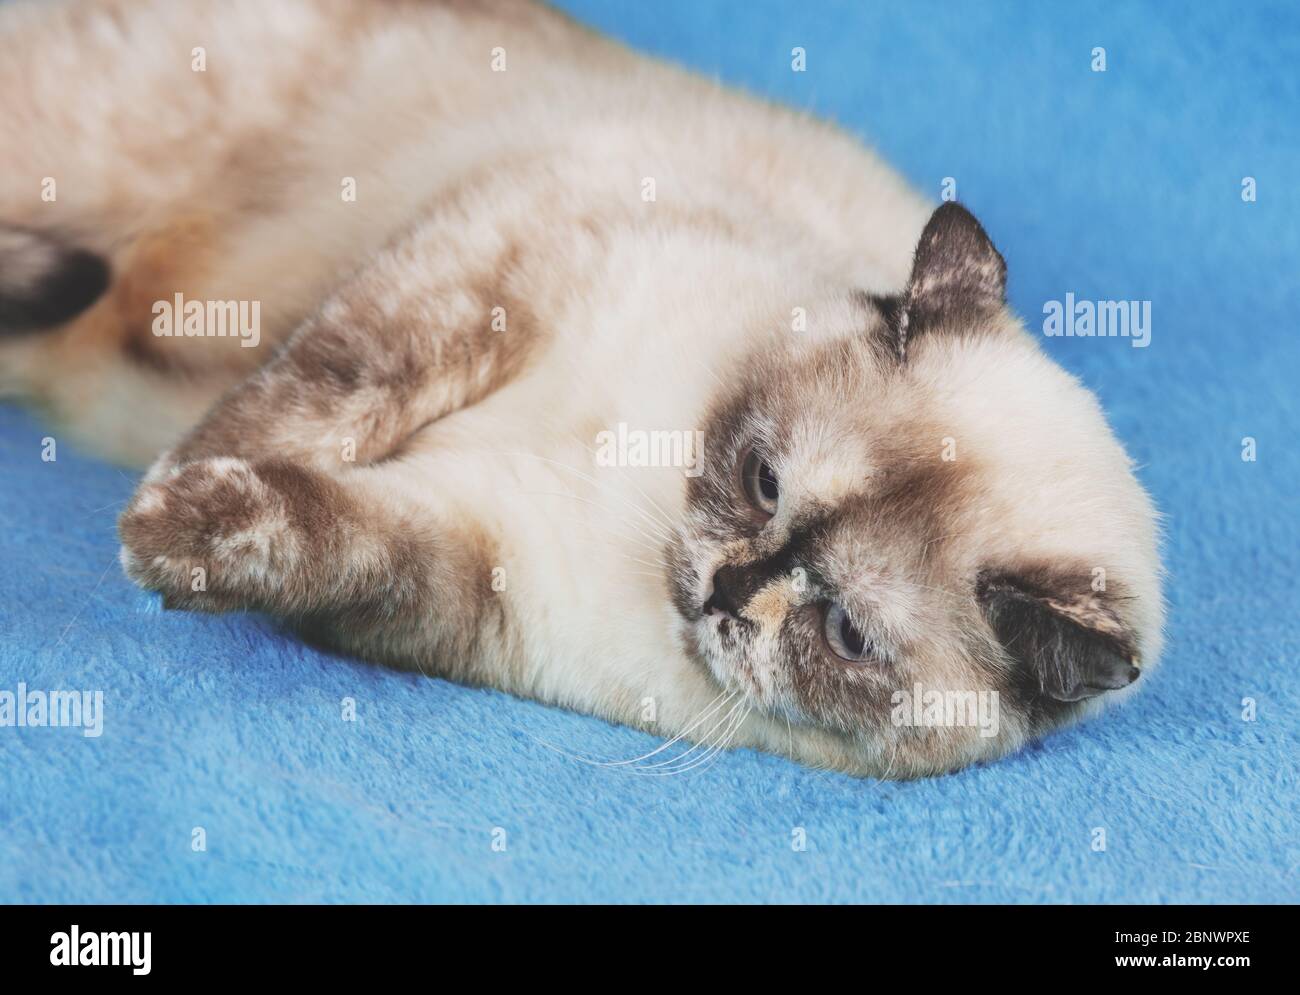 Süße Katze auf einer blauen Decke liegend Stockfoto